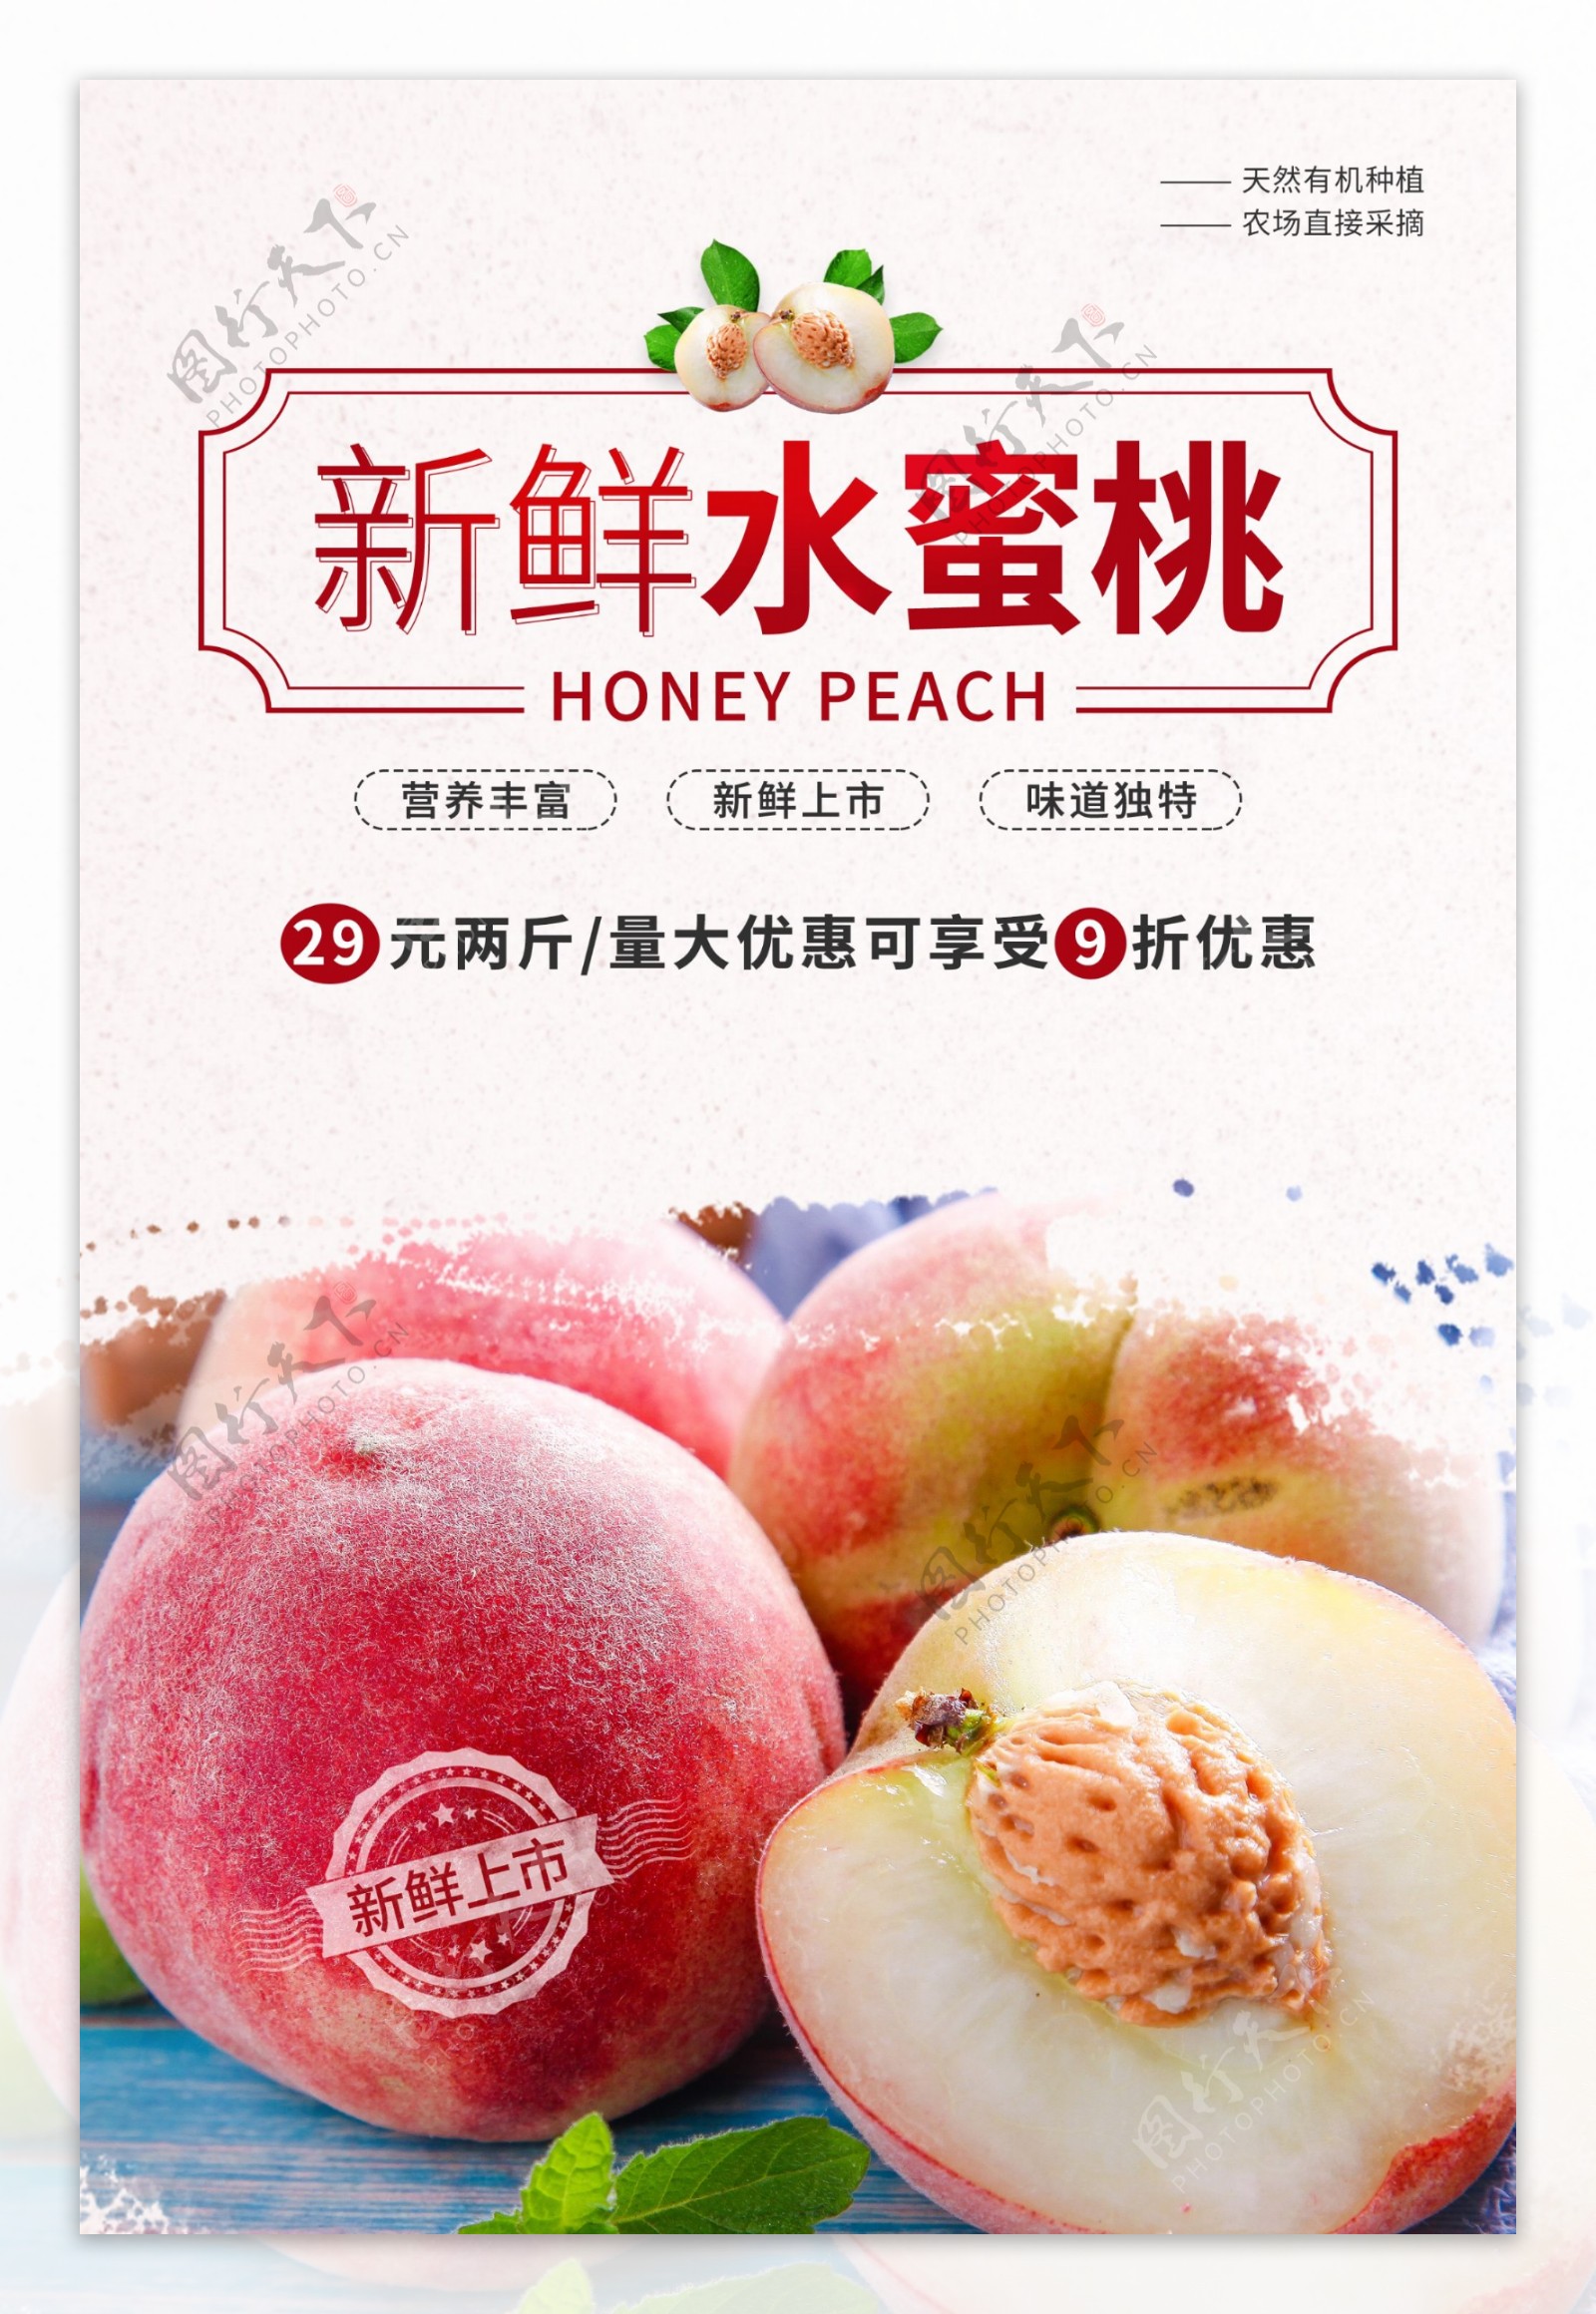 水蜜桃水果活动促销海报素材